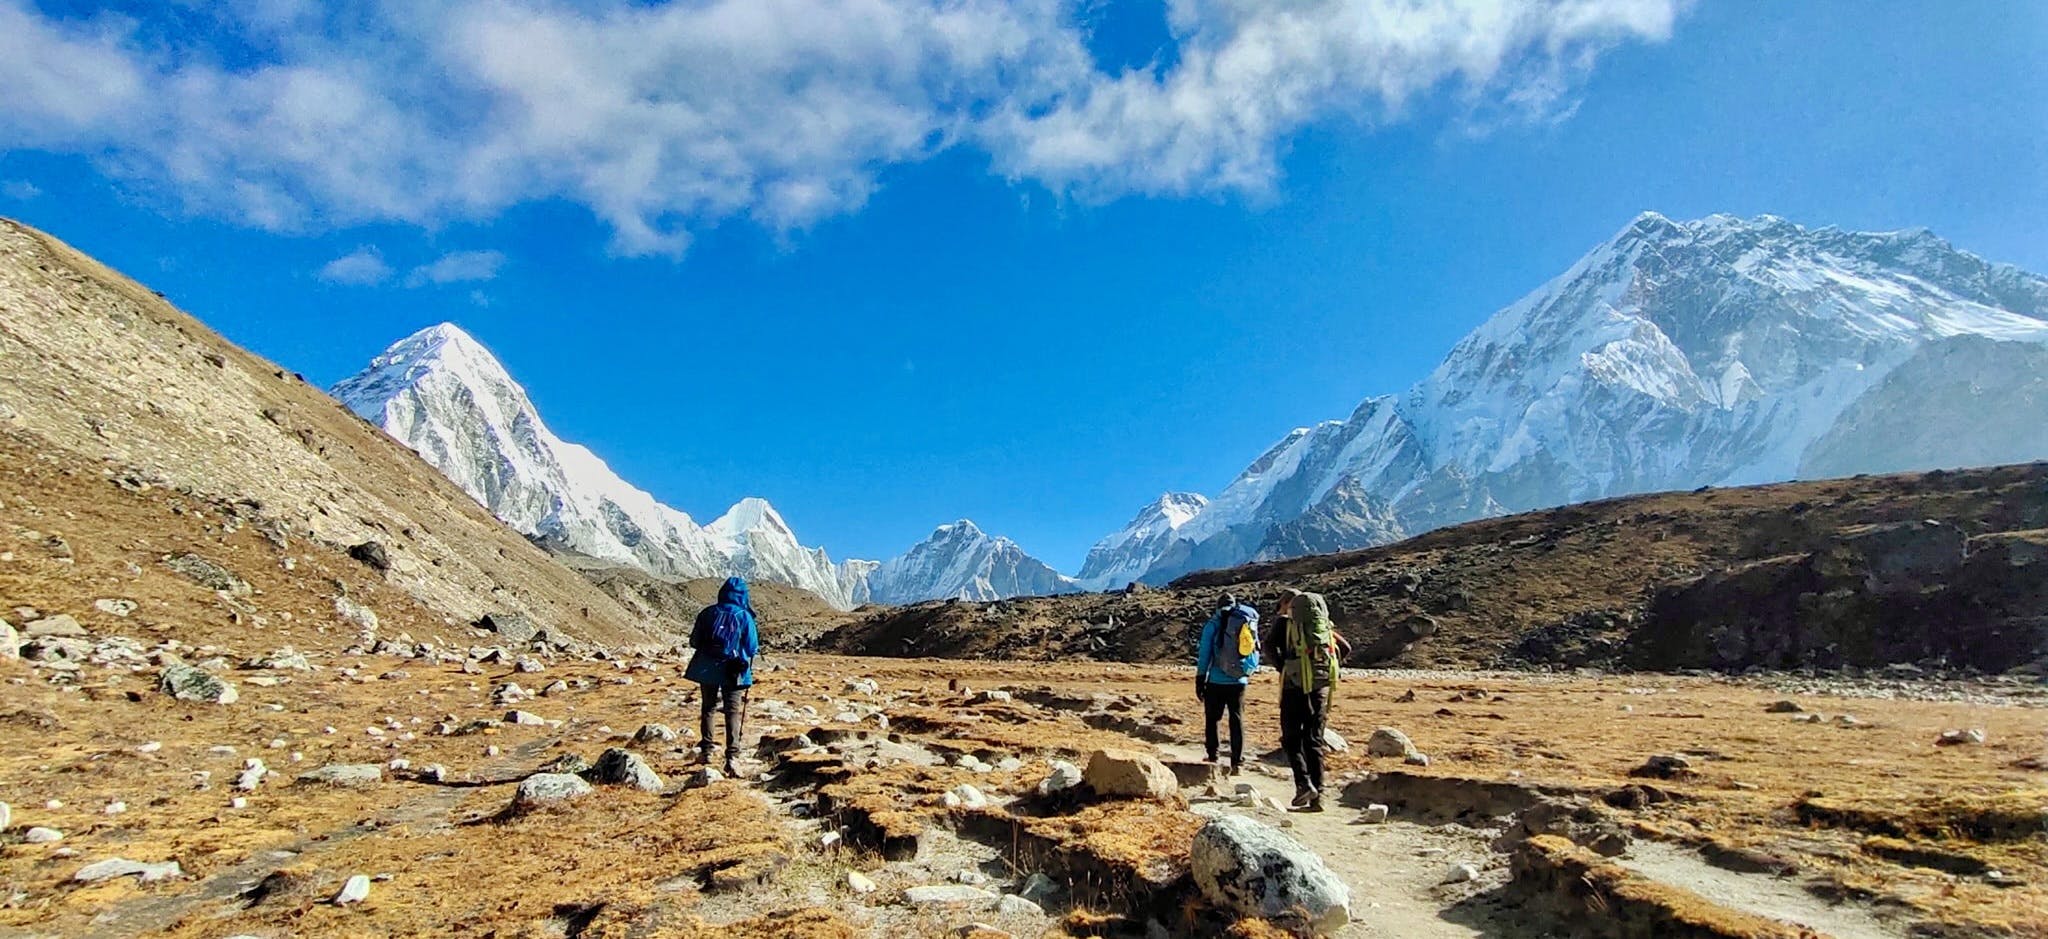 Travel Insurance for Everest Region Trekking